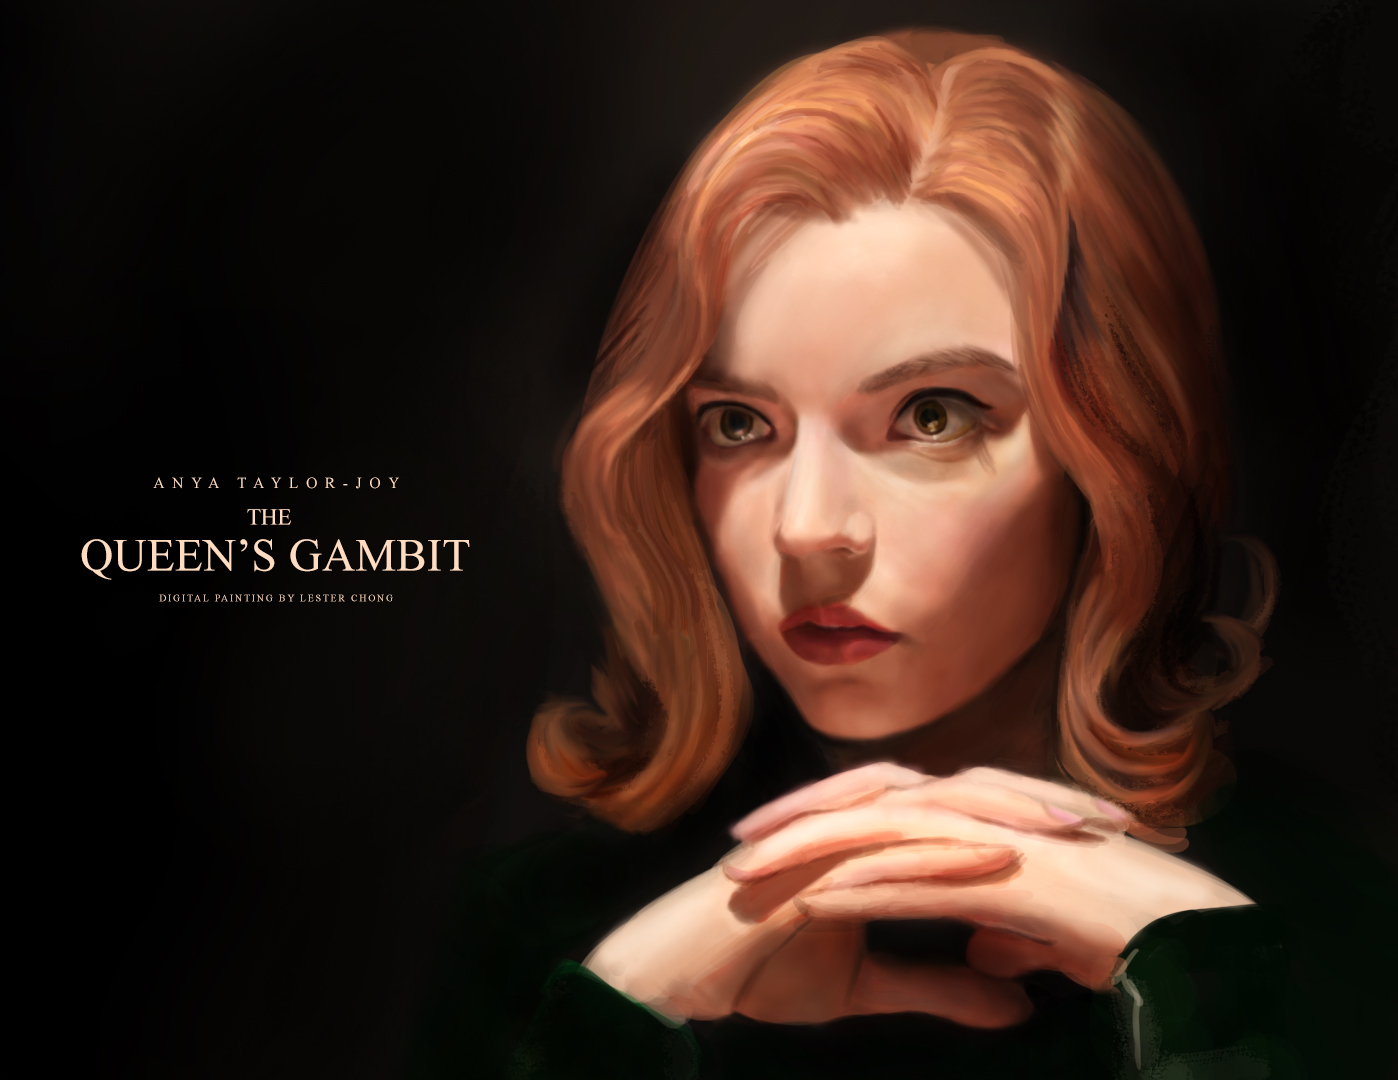 Elizabeth Harmon  The queen's gambit, Queen's gambit, Anya taylor joy